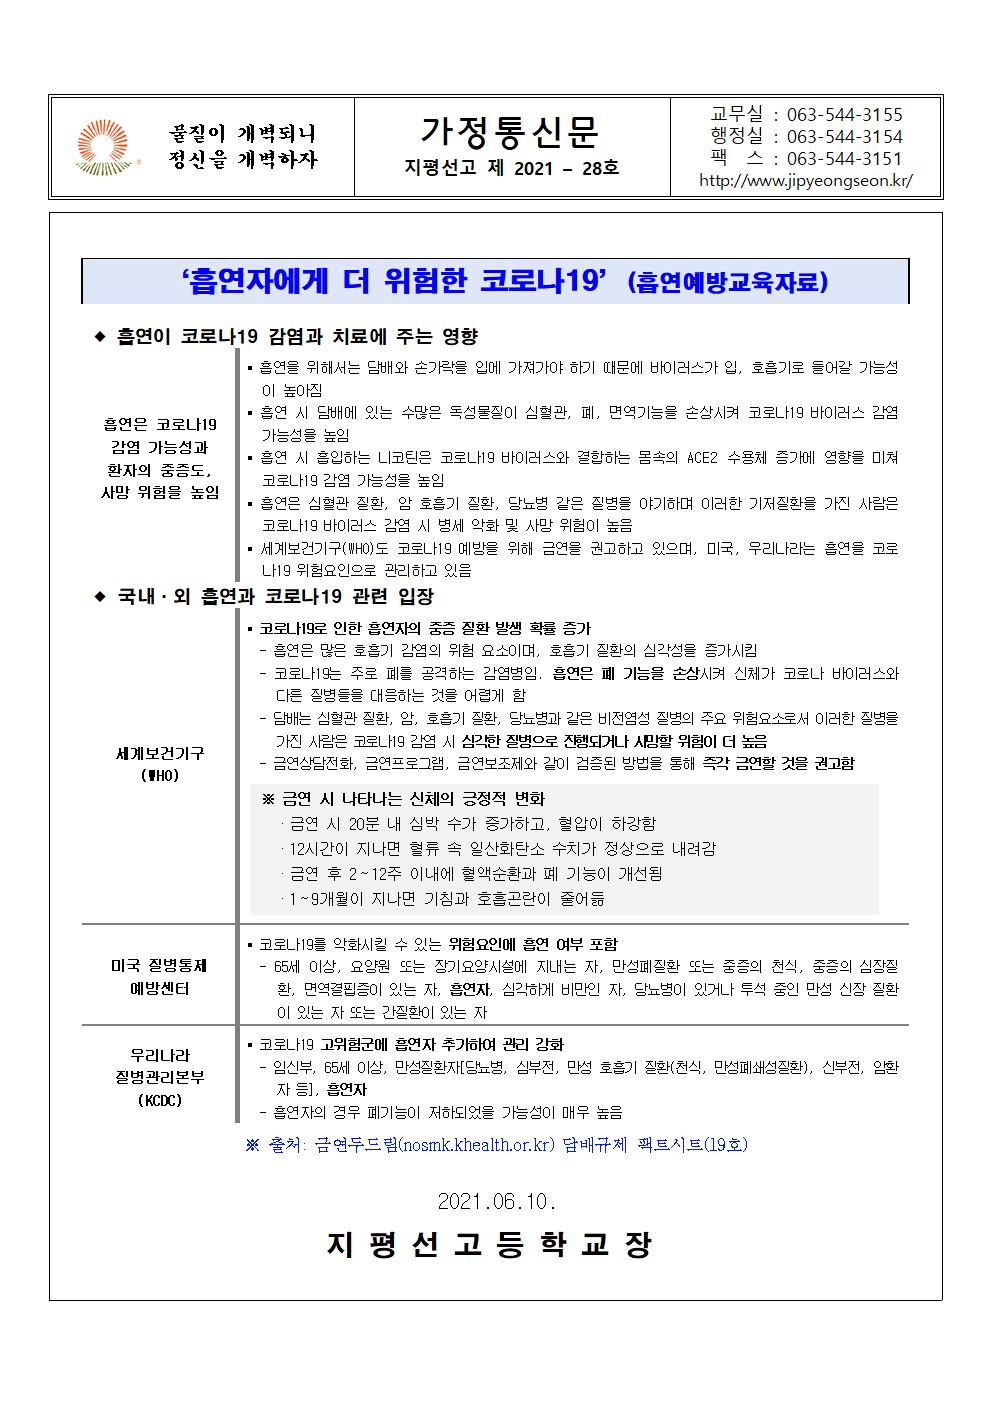 가정통신문 2021- 28호 코로나19 대응 학생흡연예방을 위한 안내001